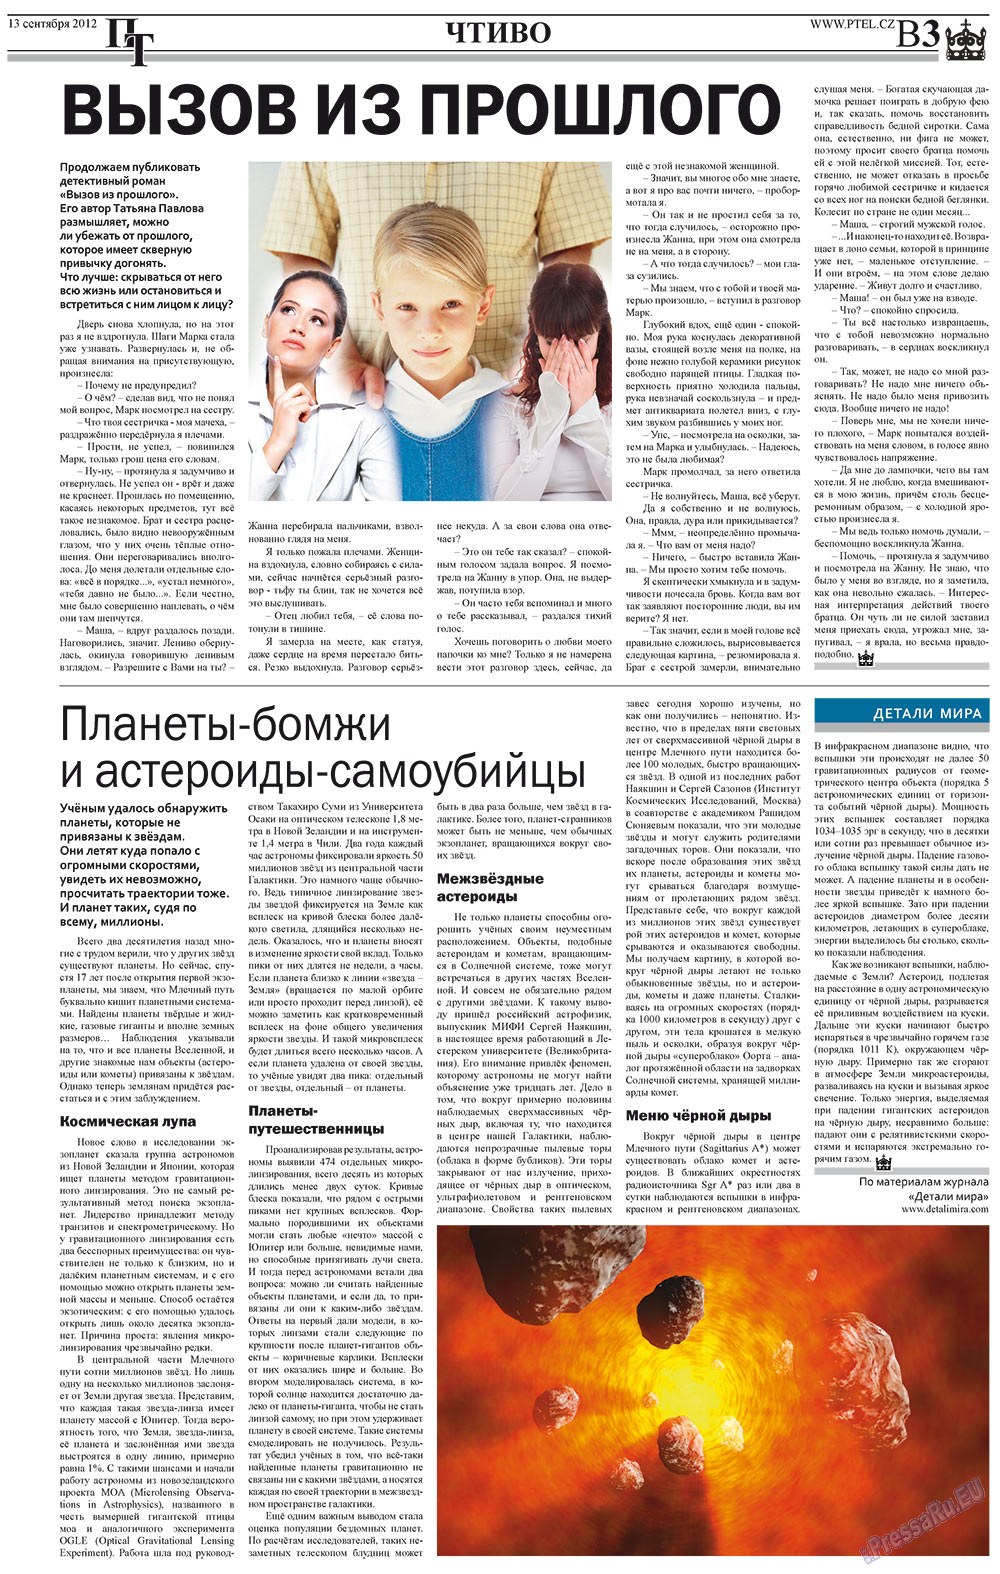 Prazhski telegraf (Zeitung). 2012 Jahr, Ausgabe 36, Seite 11